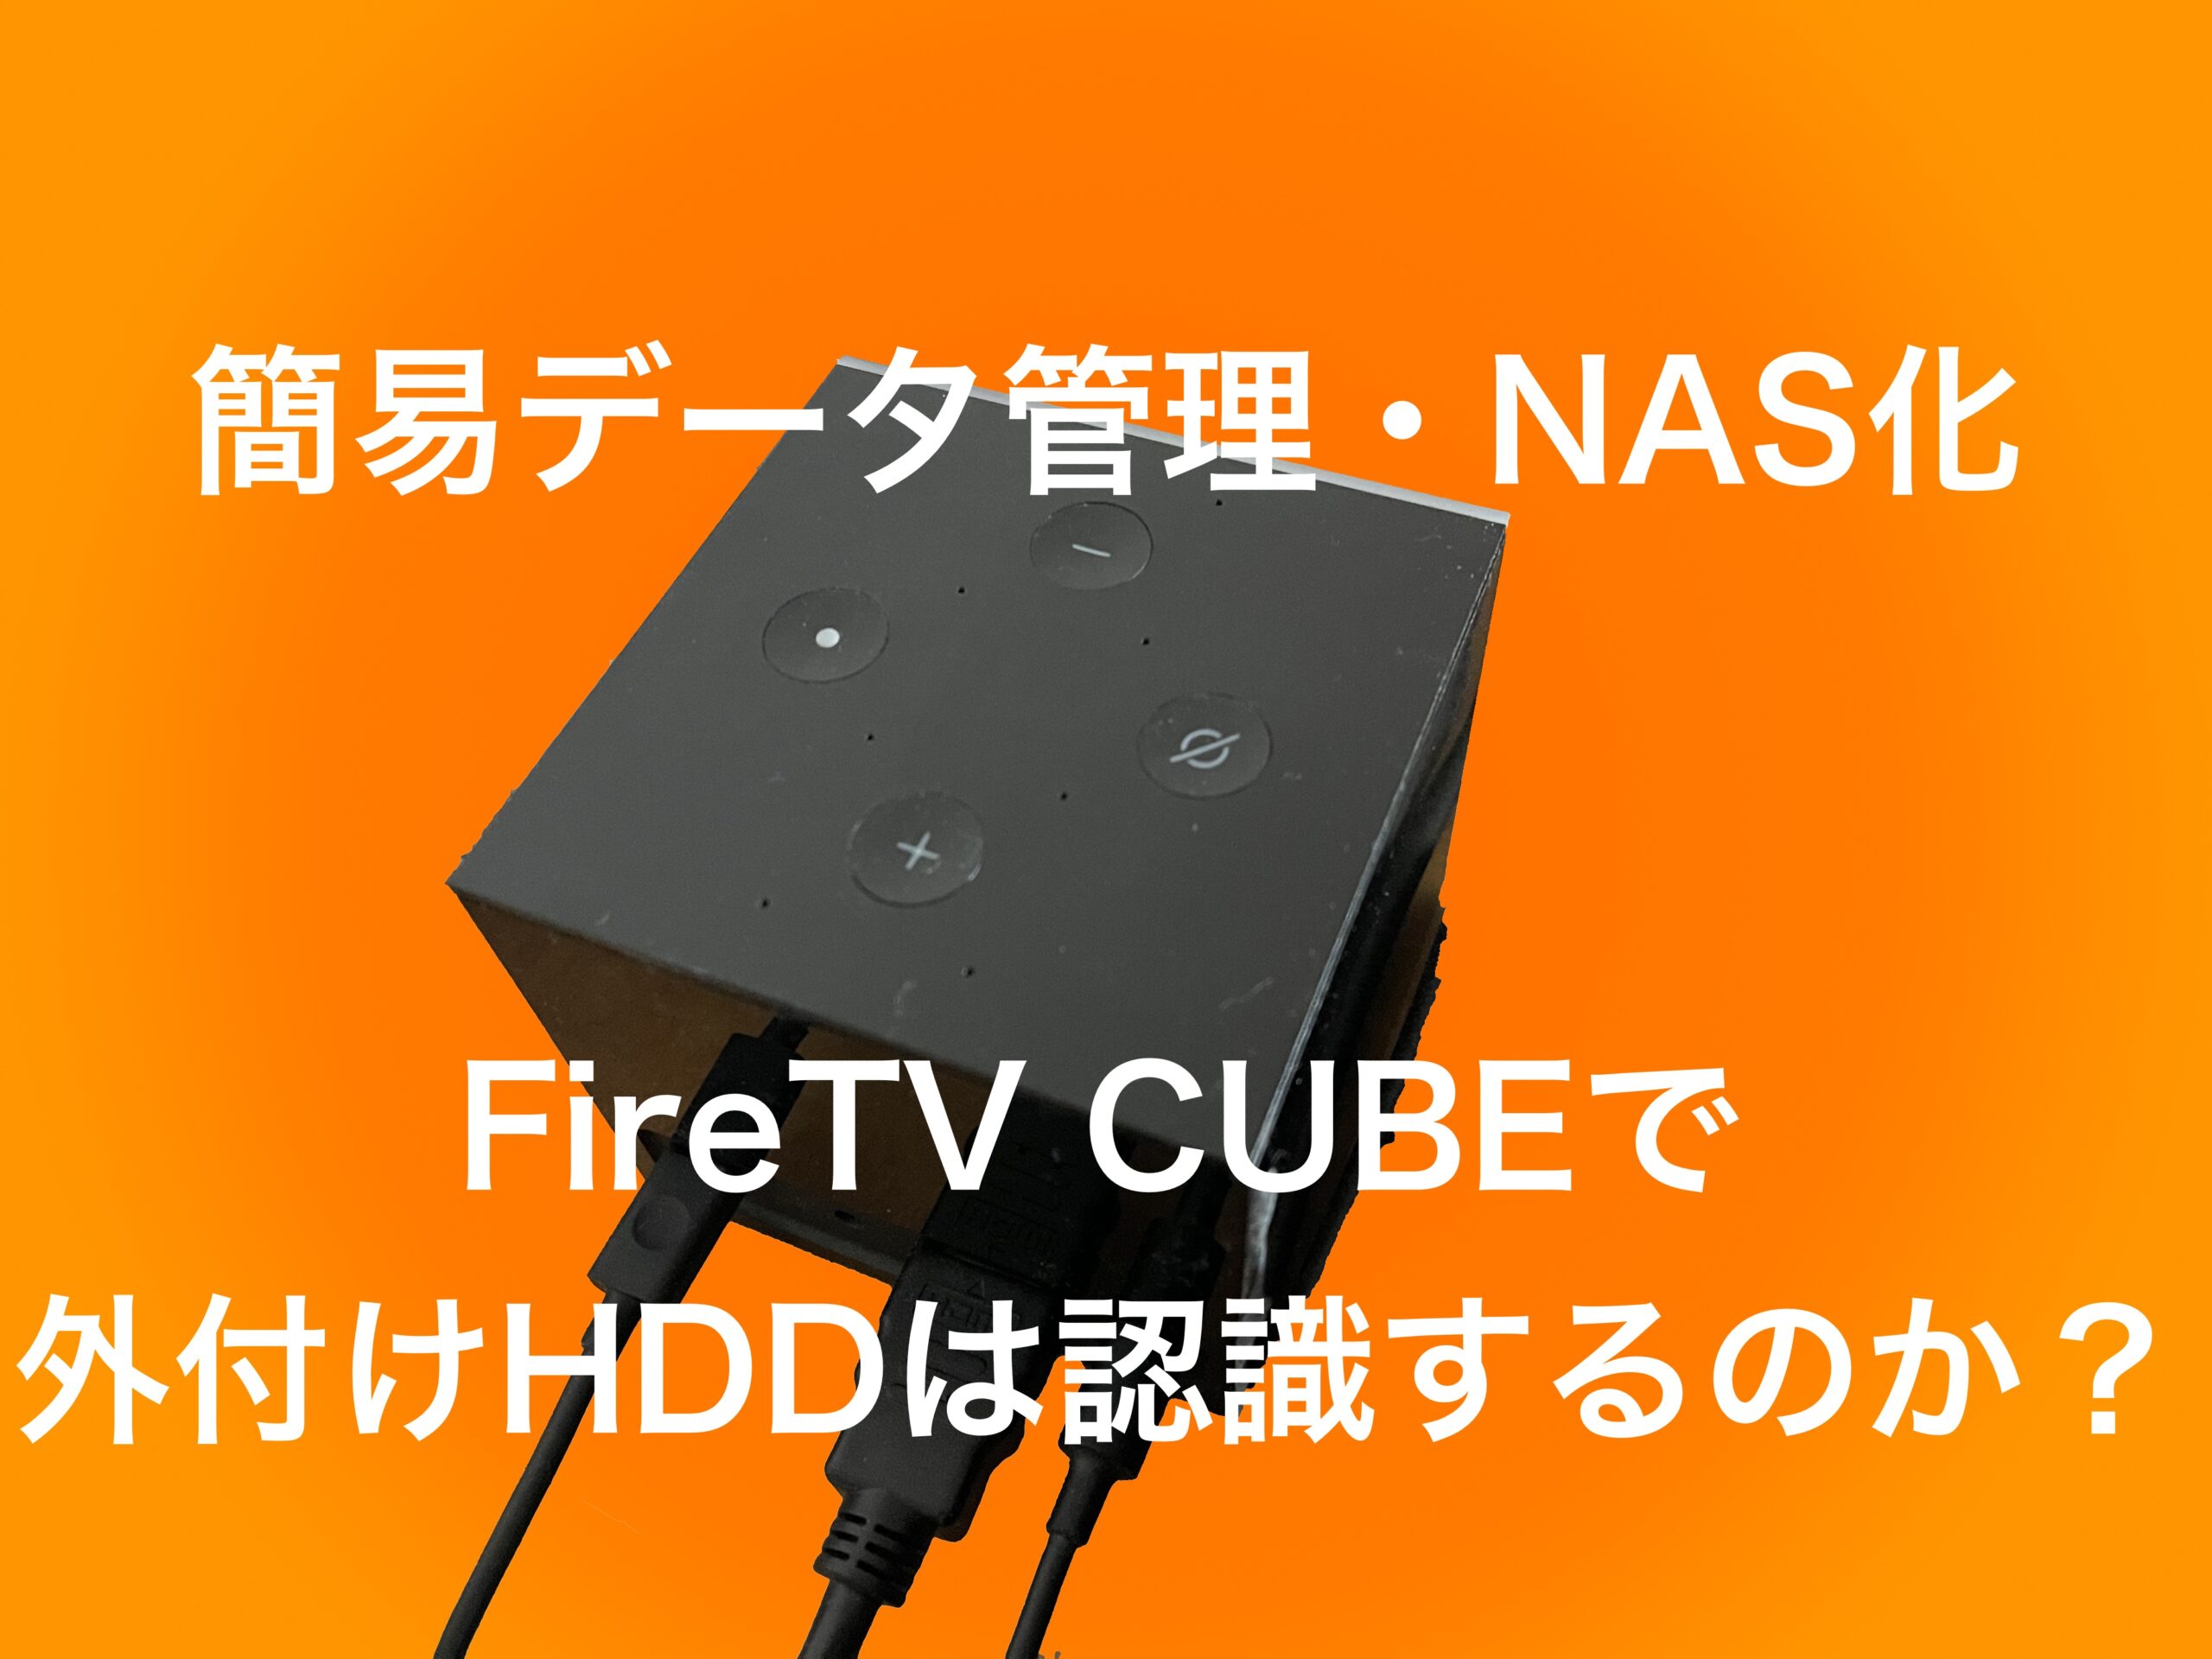 ガジェット Firetv Cube で外付けhddを接続する 普通にできる Hiroblo